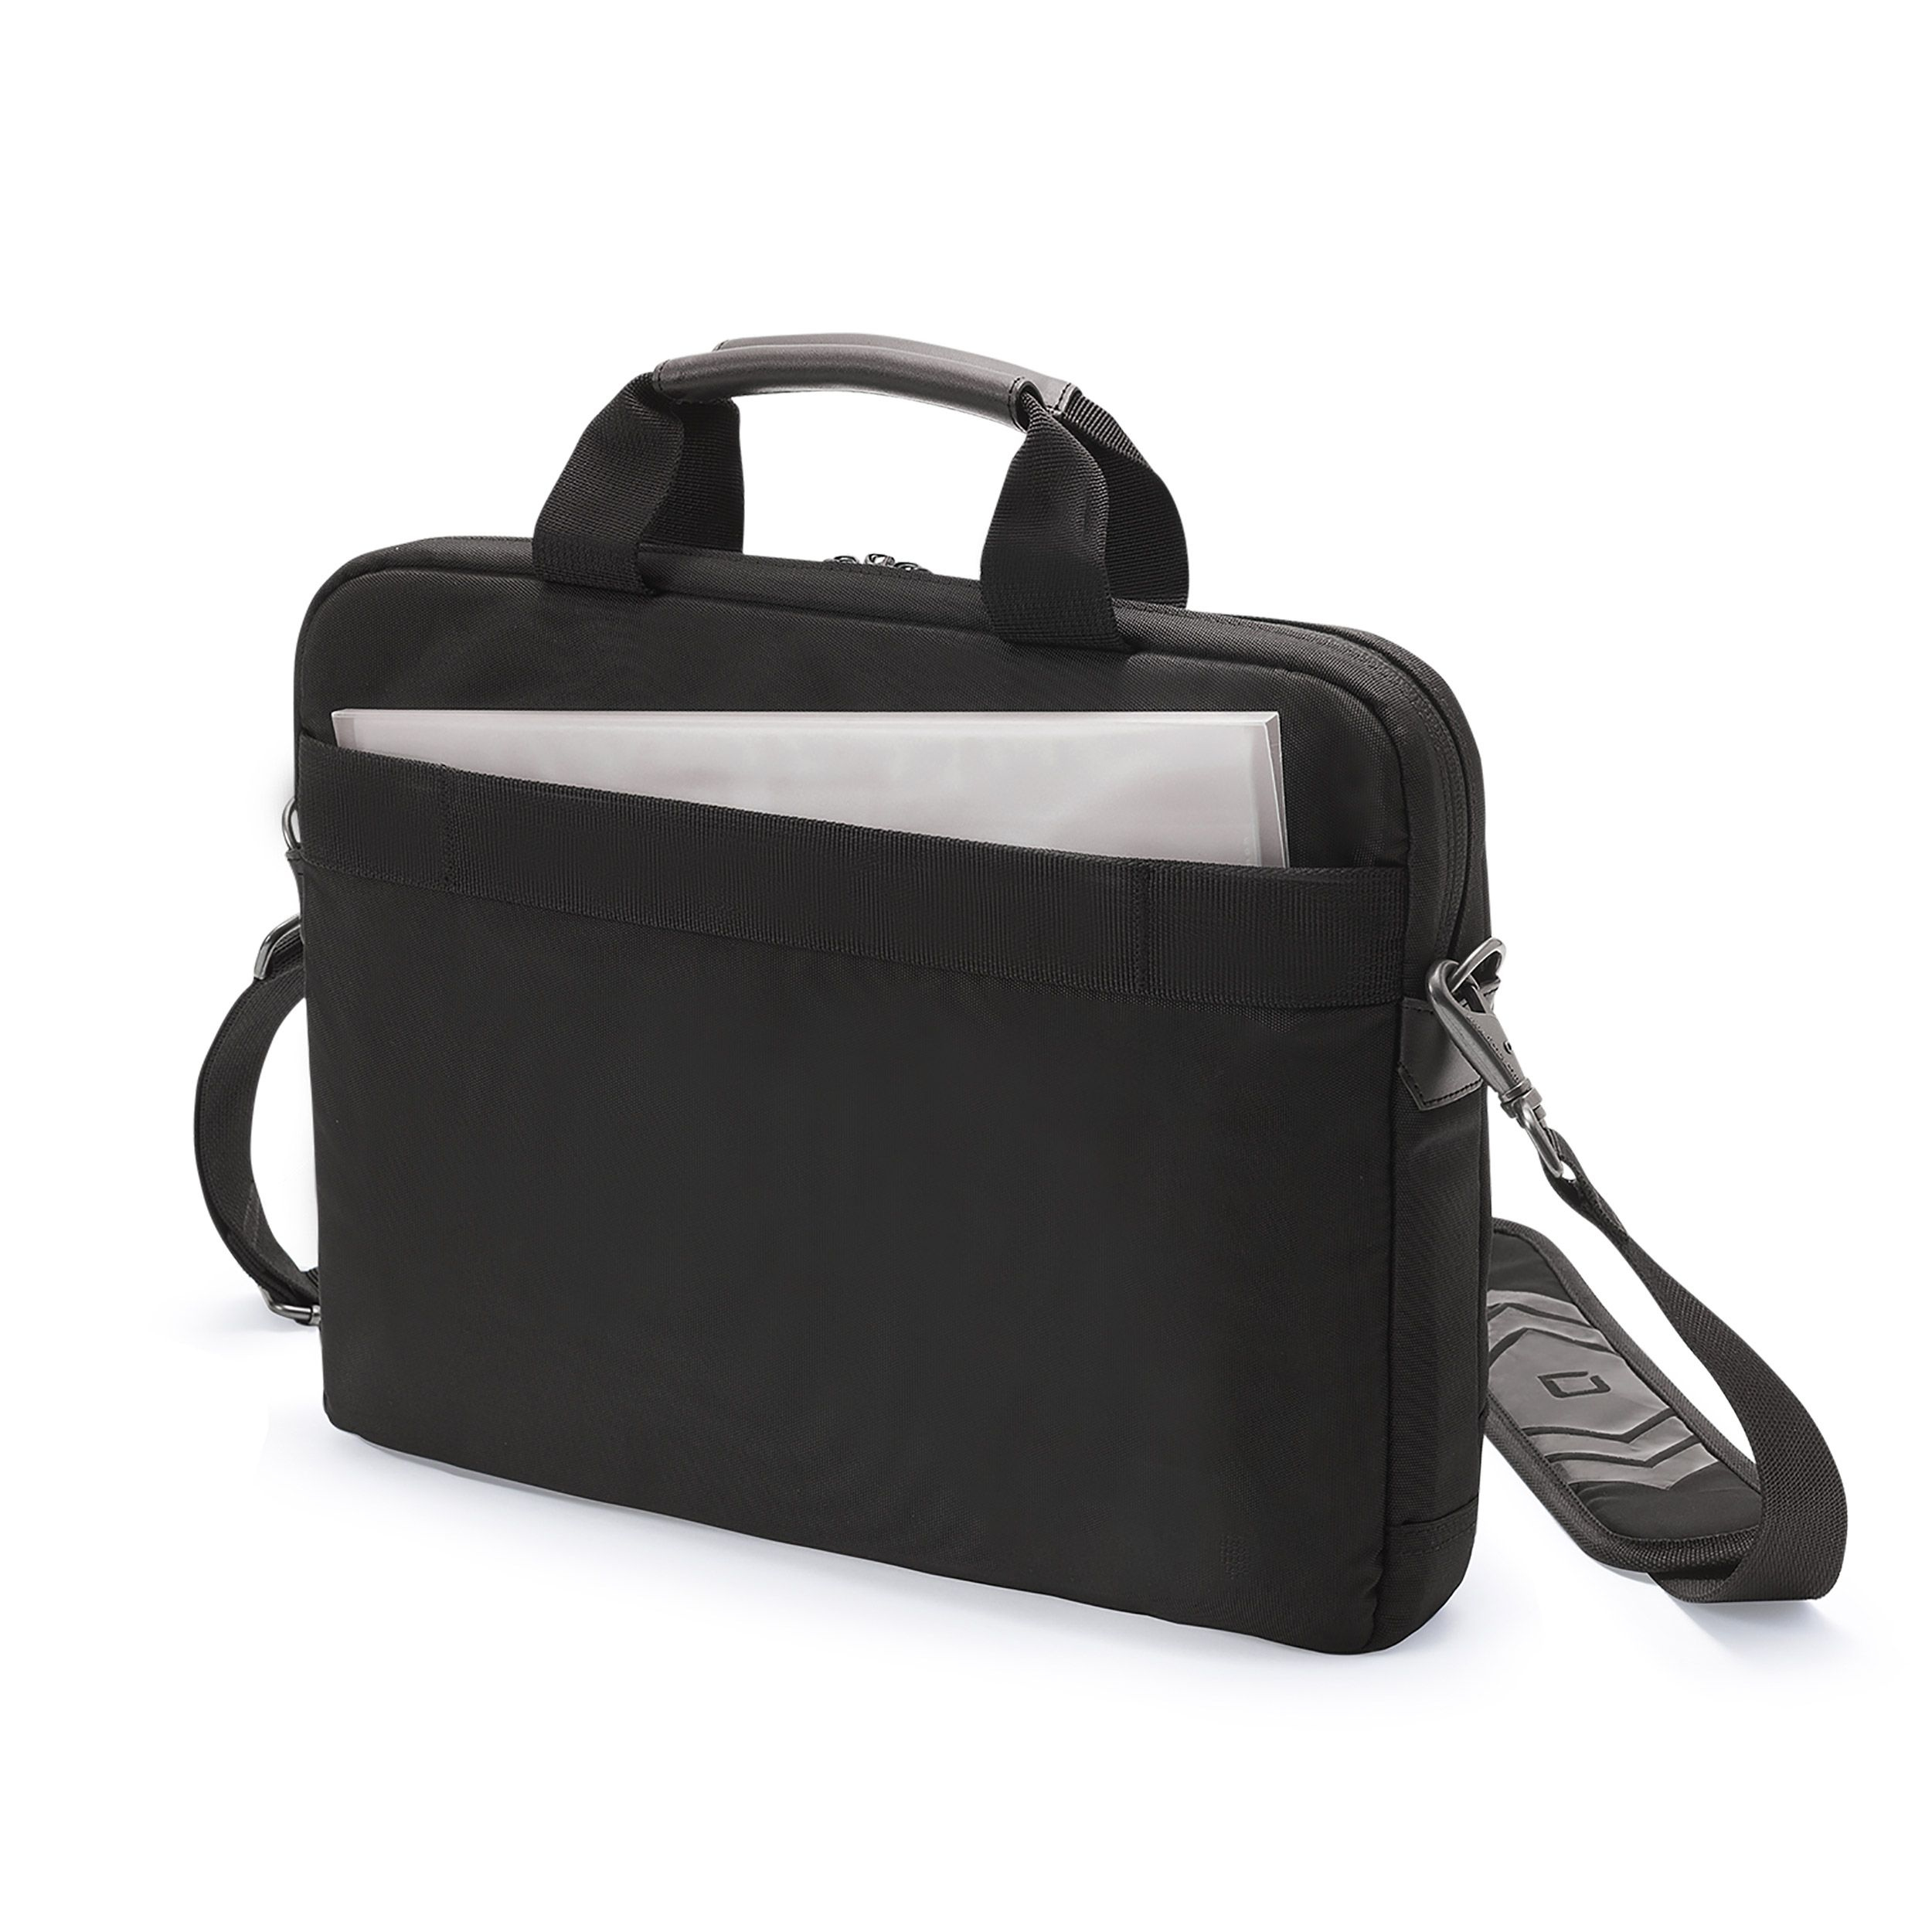 DICOTA Eco Slim Case PRO väskor bärbara datorer 35,8 cm (14.1') Portfölj Svart